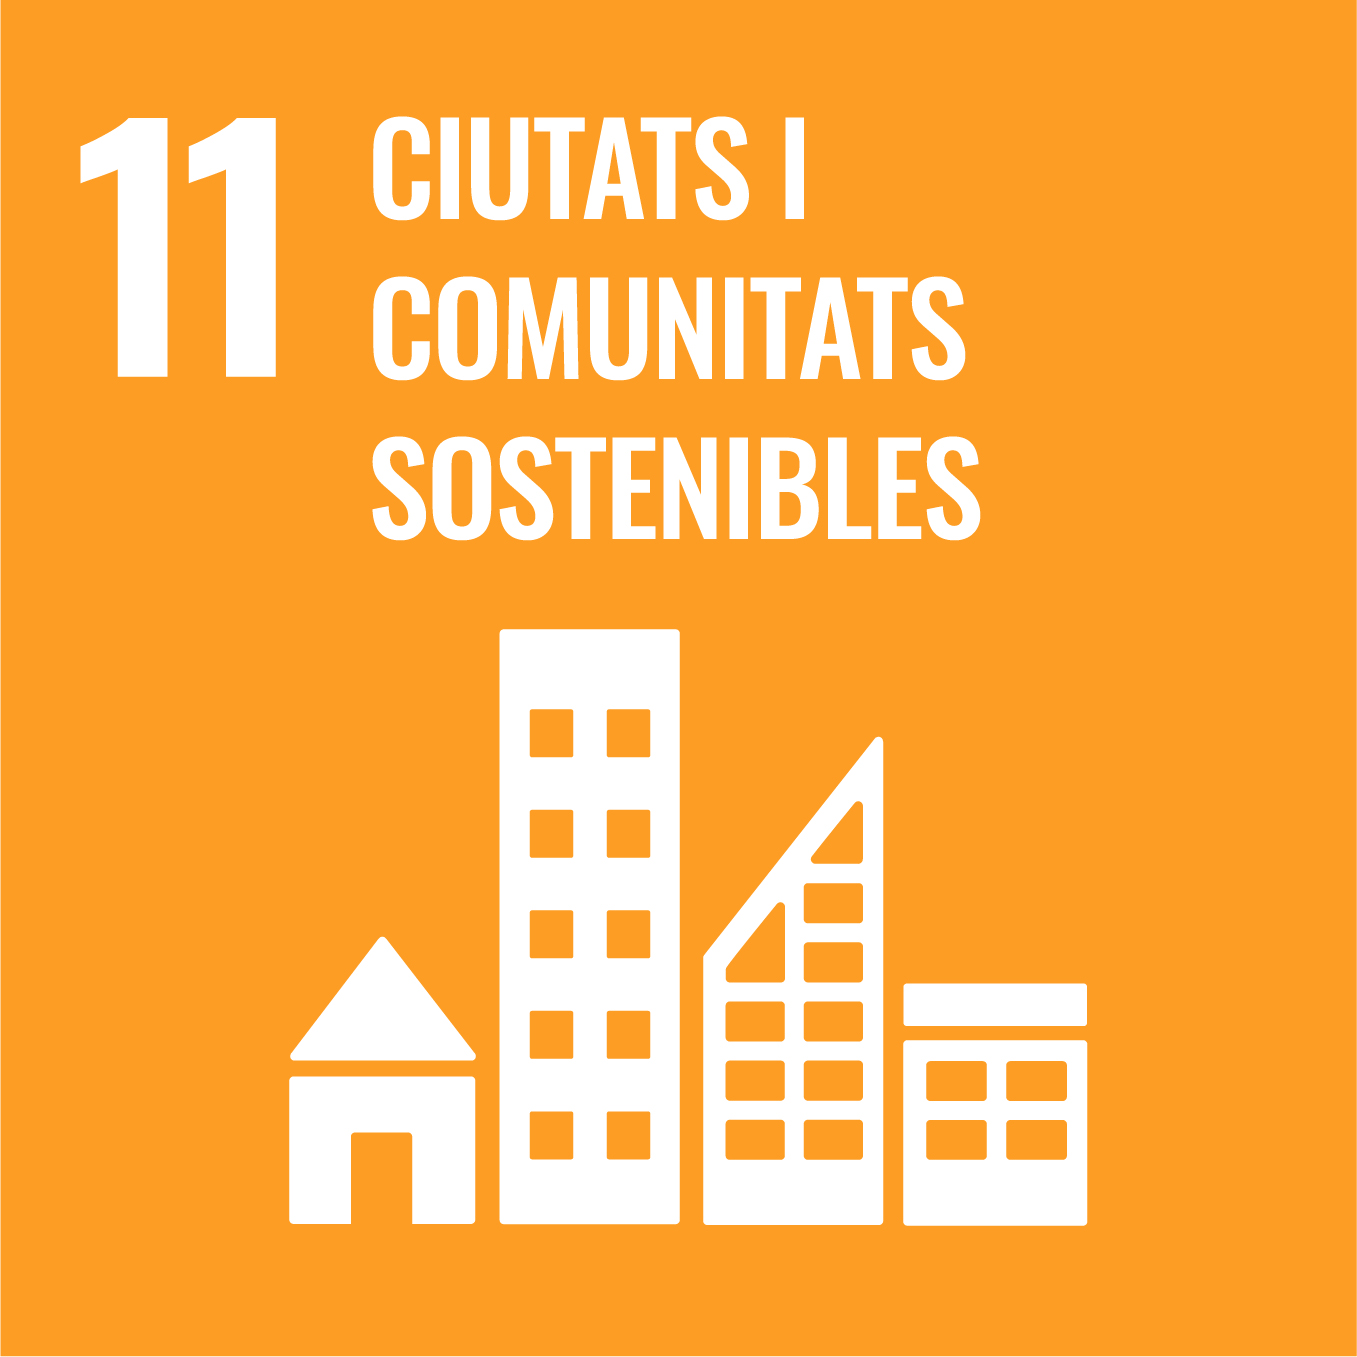 Aconseguir que les ciutats i els assentaments humans siguin inclusius, segurs, resilients i sostenibles